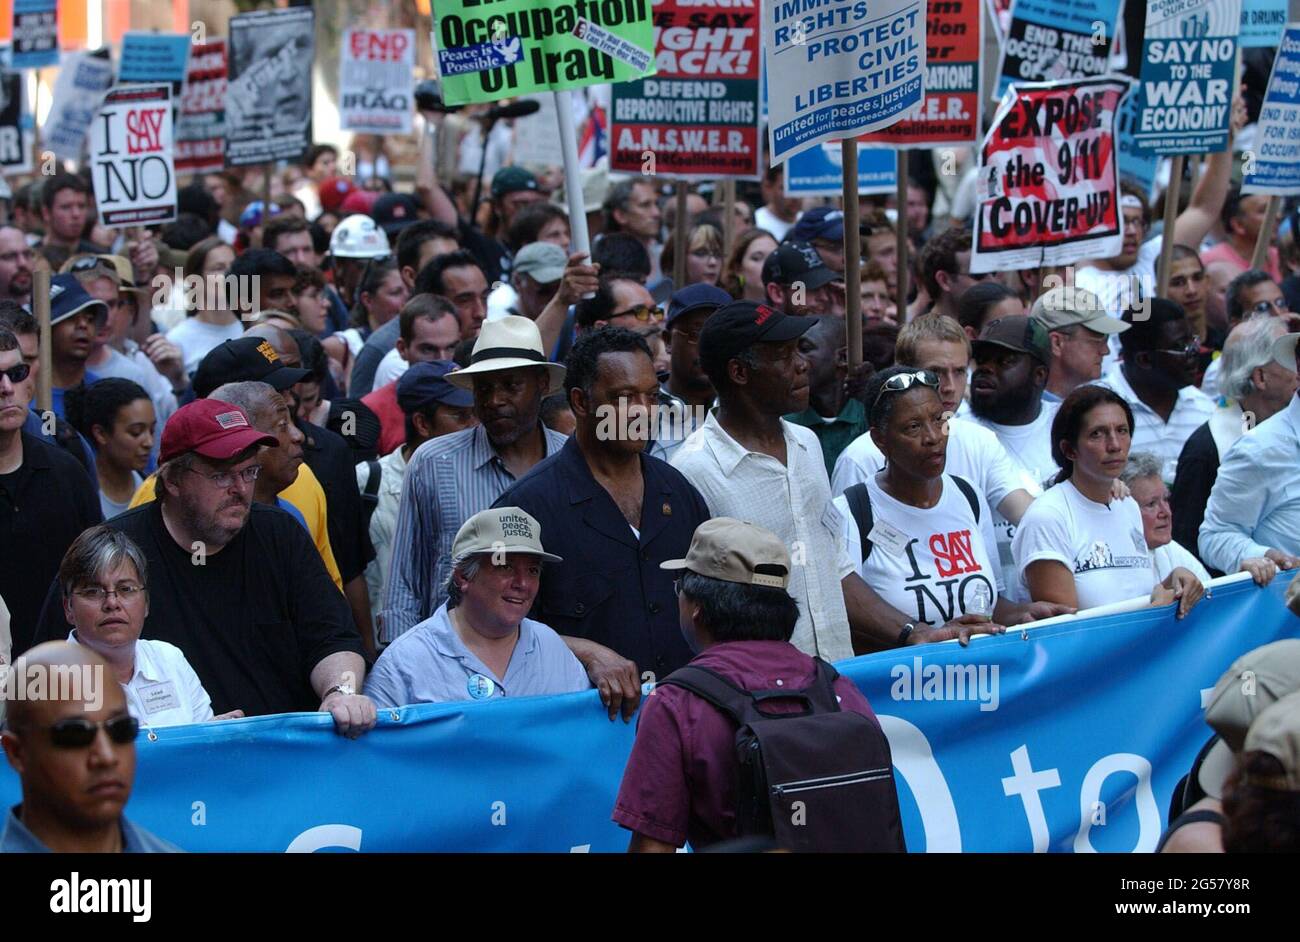 Manhattan, NY, États-Unis. 25 juin 2021. Plus de 100,000 000 manifestants ont inondé les rues de Manhattan en tant que coalition arc-en-ciel de militants anti-guerre, anti-capitalistes, défenseurs des droits de l'homme et pro-choix réunis en une marche contre le président Bush. Ici sur la ligne de front est Michael Moore, en Red Hat, Jesse Jackson, en chemise noire et Danny Glover, en chemise blanche et chapeau noir. Crédit : C. Neil Decrescenzo/ZUMA Wire/Alamy Live News Banque D'Images